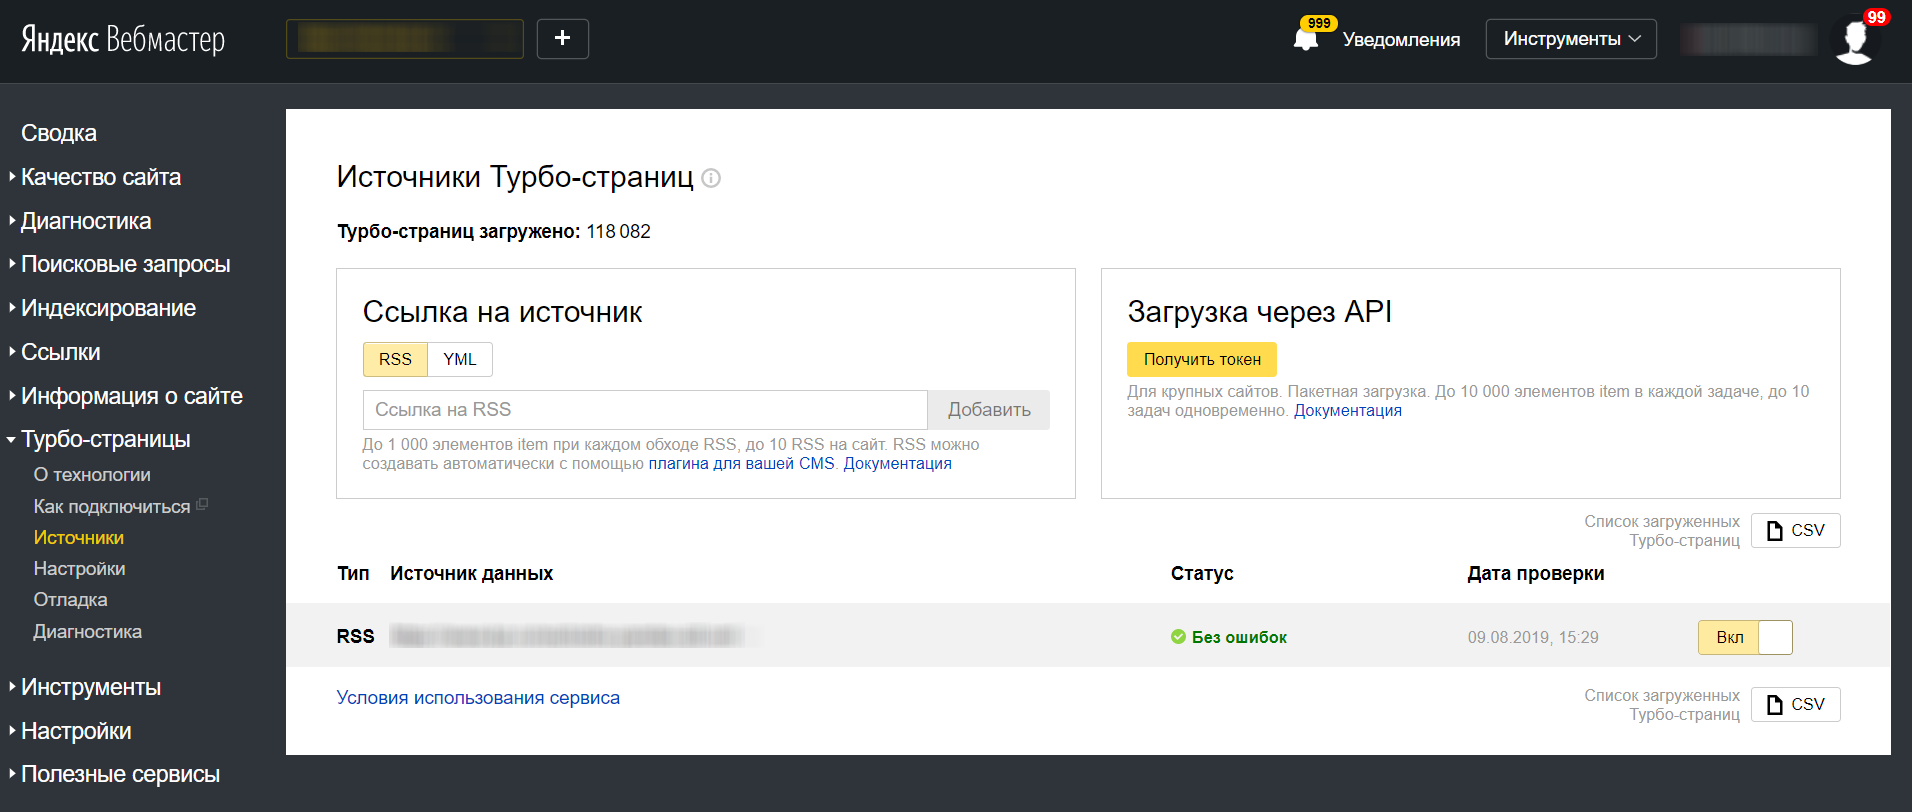 Яндекс.Вебмастер позволил выгружать список действующих Турбо-страниц